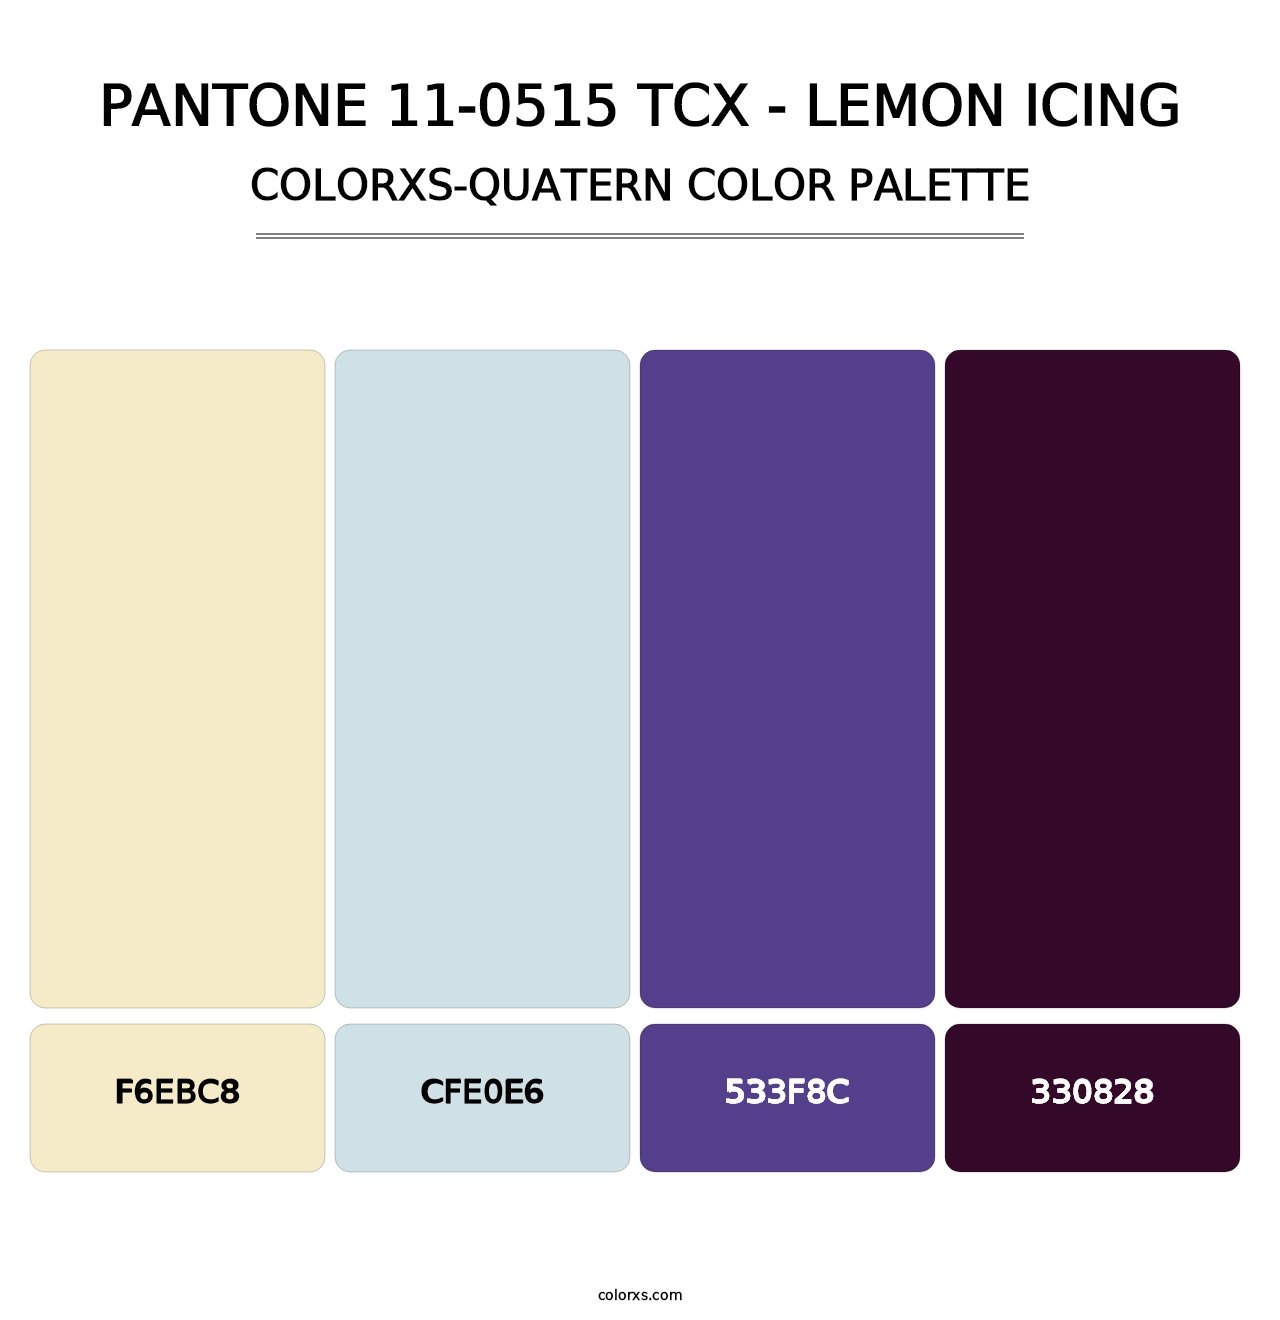 PANTONE 11-0515 TCX - Lemon Icing - Colorxs Quatern Palette